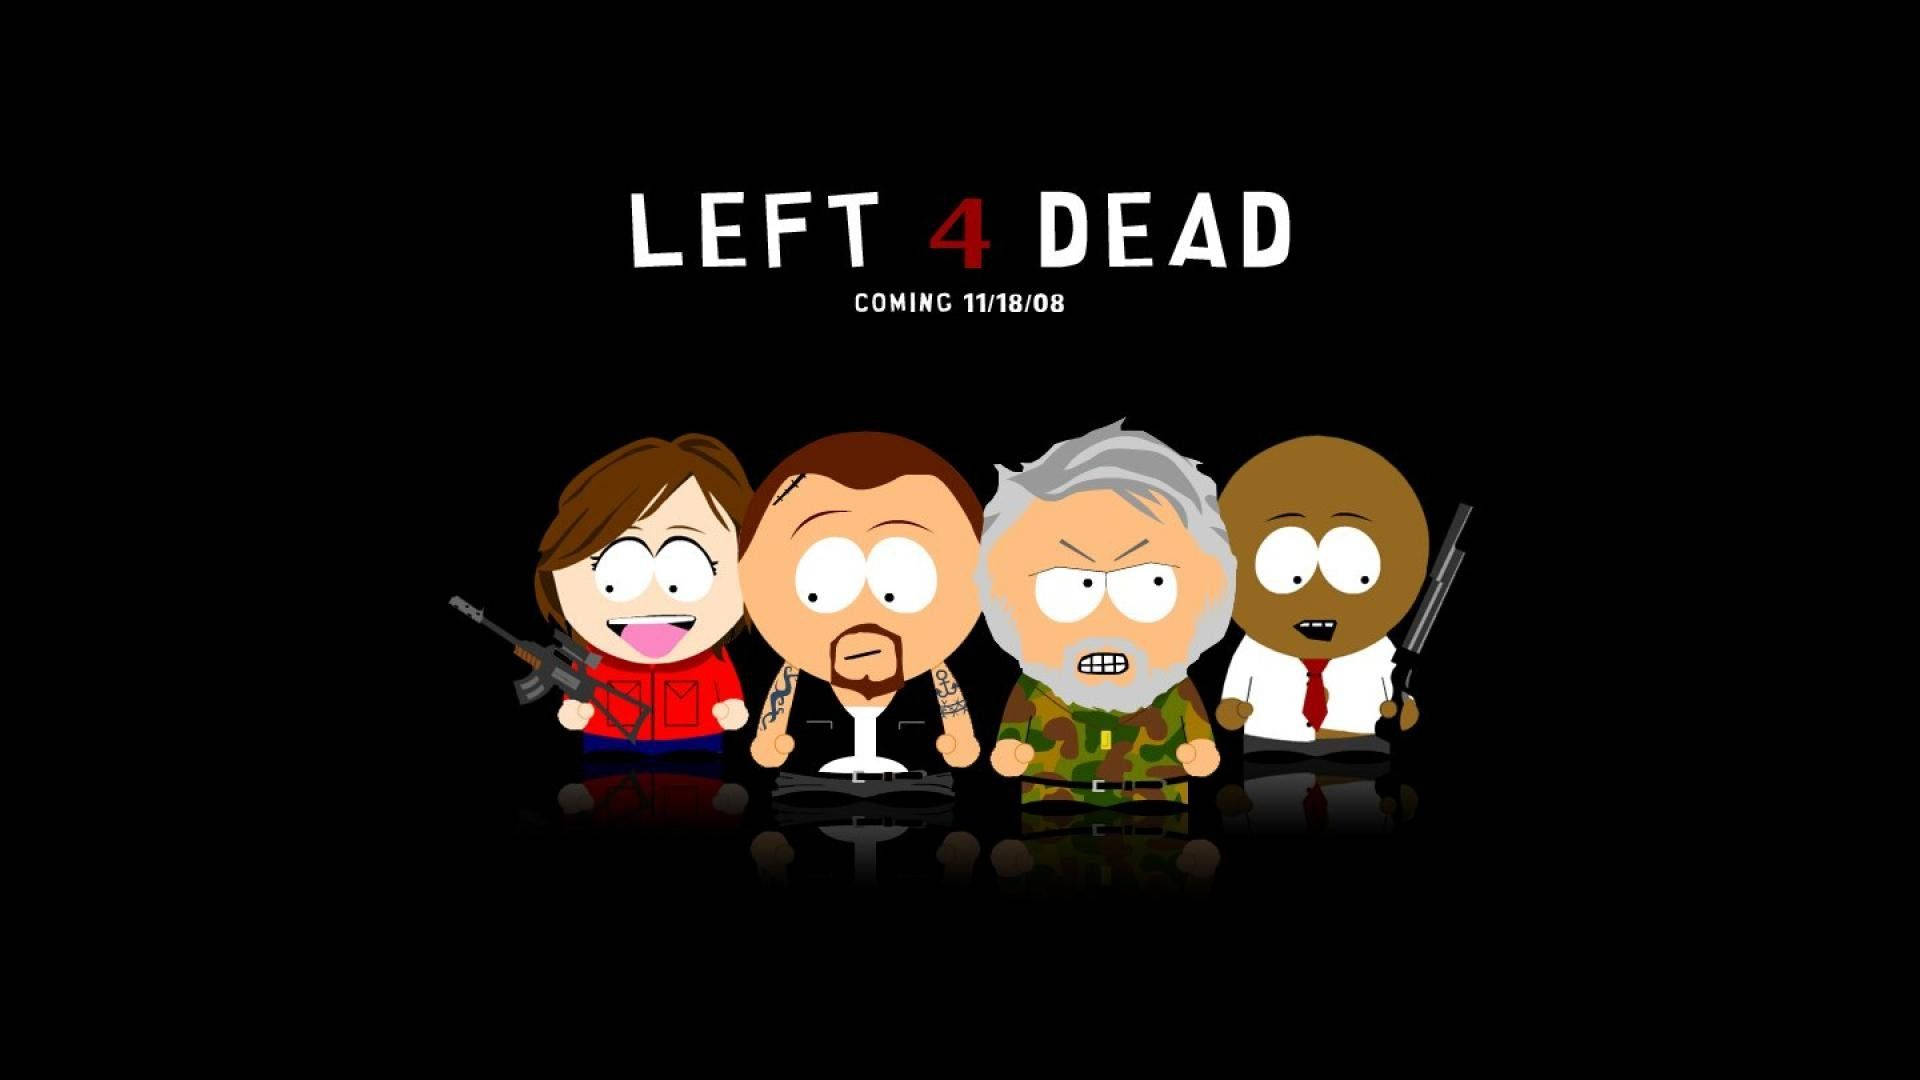 Left 4 Dead X South Park Background